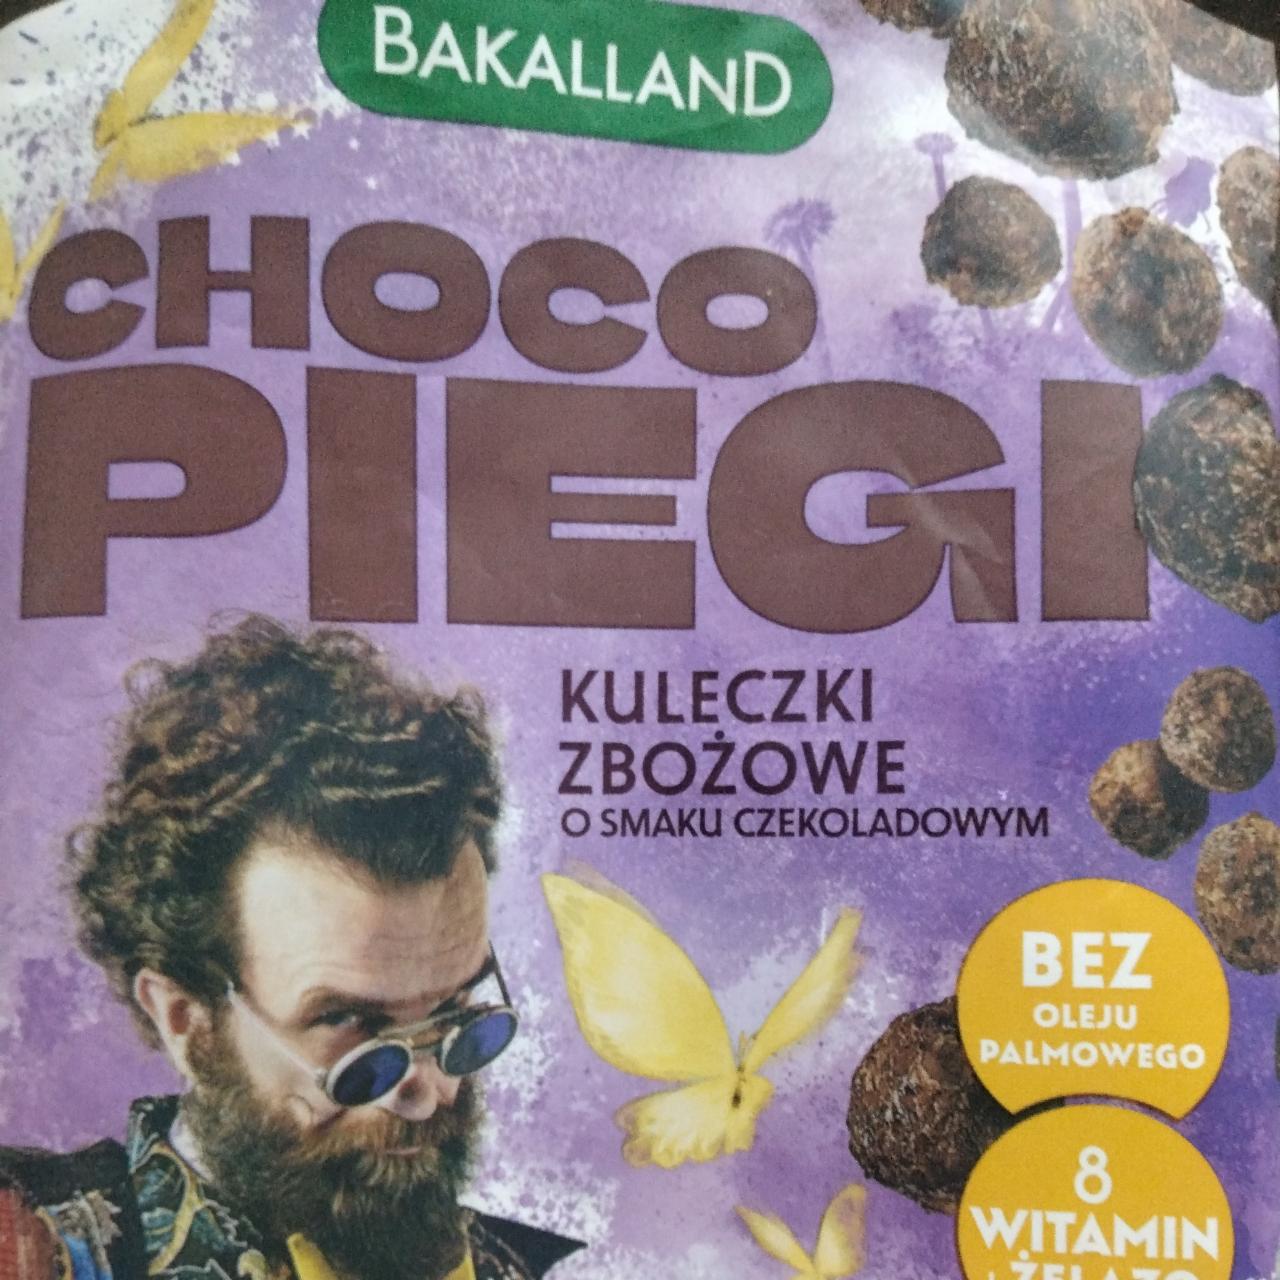 Zdjęcia - Choco piegi kuleczki zbożowe o smaku czekoladowym Bakalland